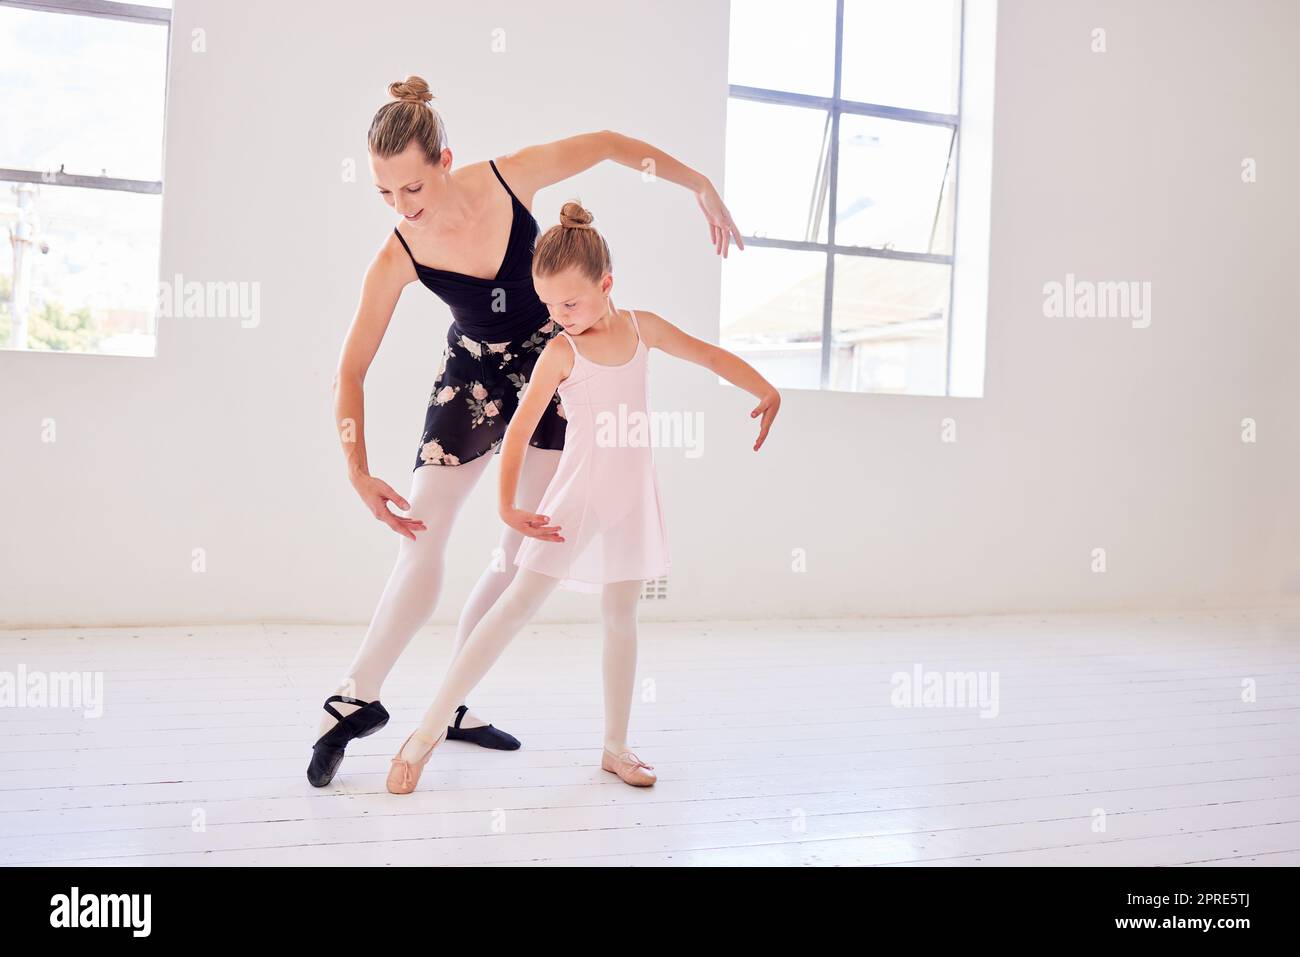 Ballett, Eleganz und Tanzlehrer, der Ballerinas Bewegung und Haltung in einem Tanzstudio beibringt. Lehrer, die sich mit einem Kind verbinden, während sie Leistungsroutine und Anmut, klassische Kunst erlernen Stockfoto